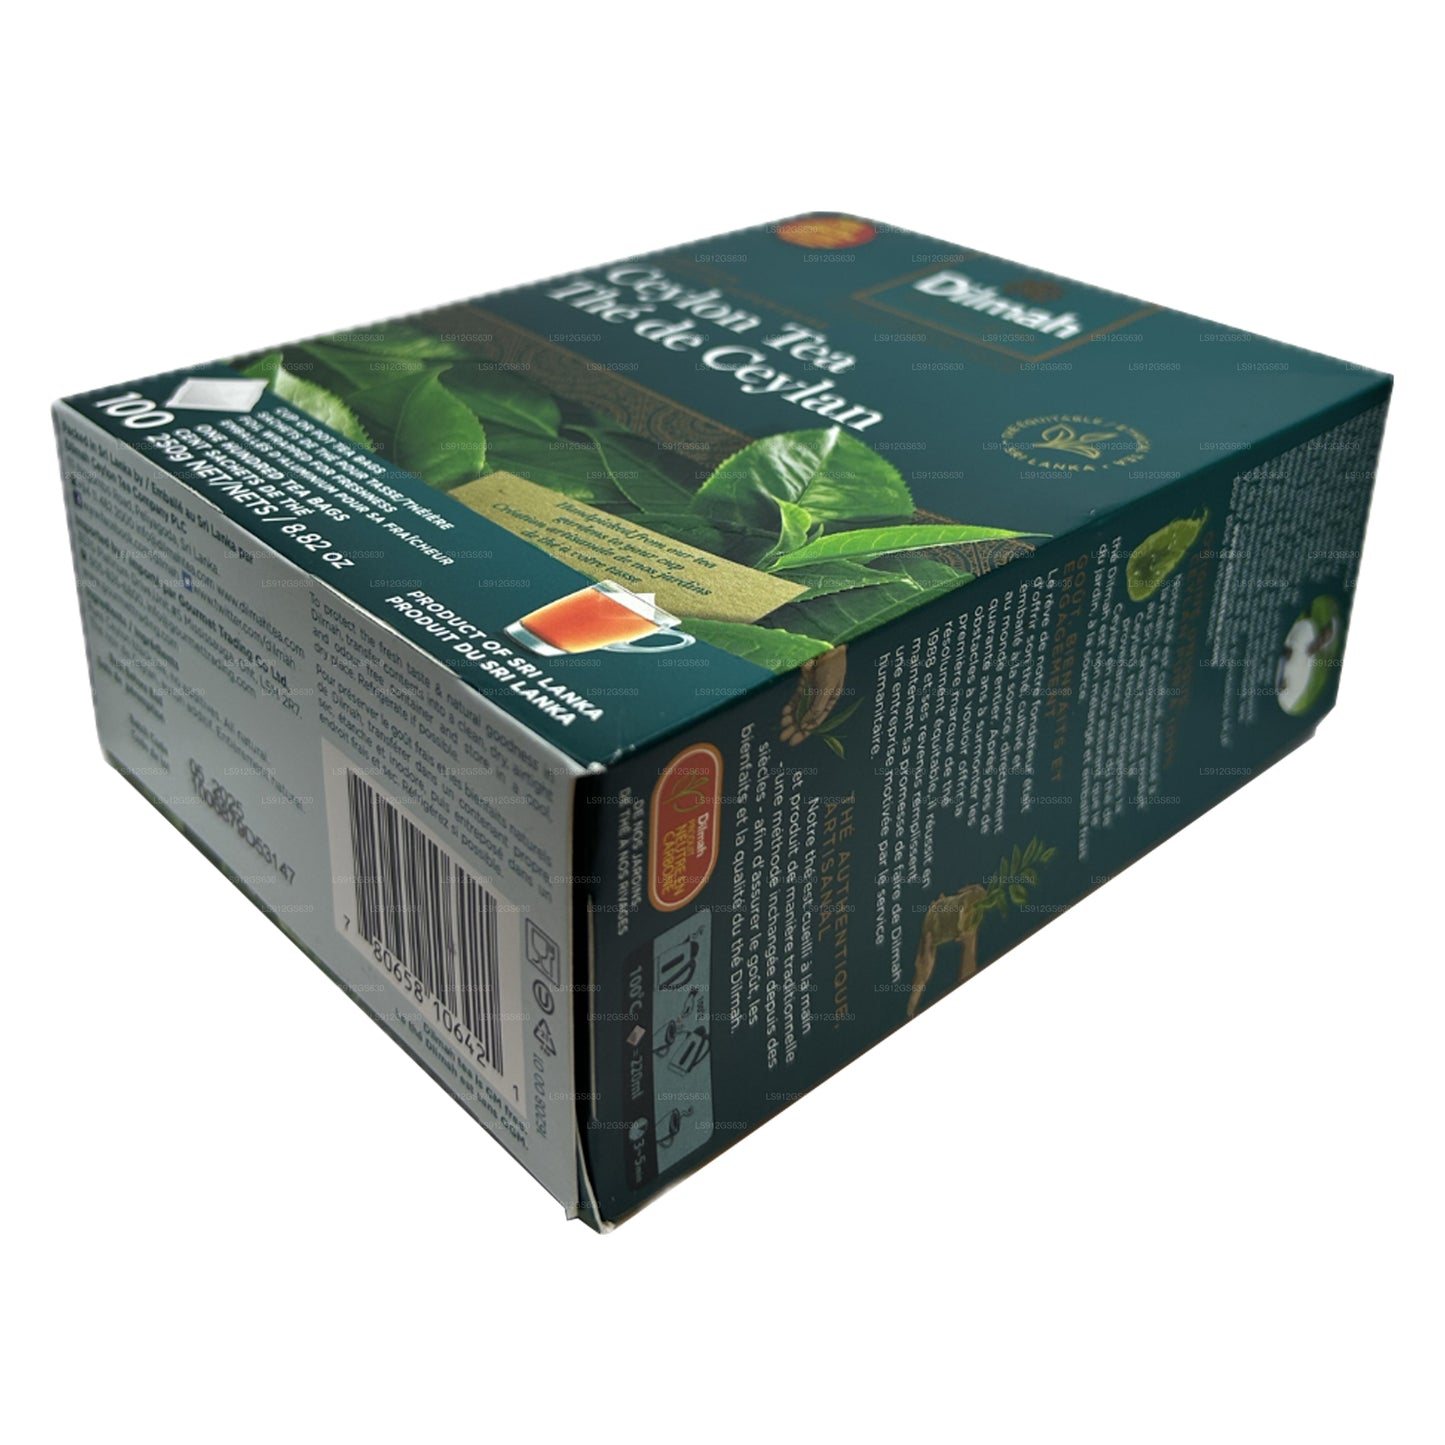 Dilmah Premium Ceylon-thee (250 g) 100 theezakjes zonder zakjes